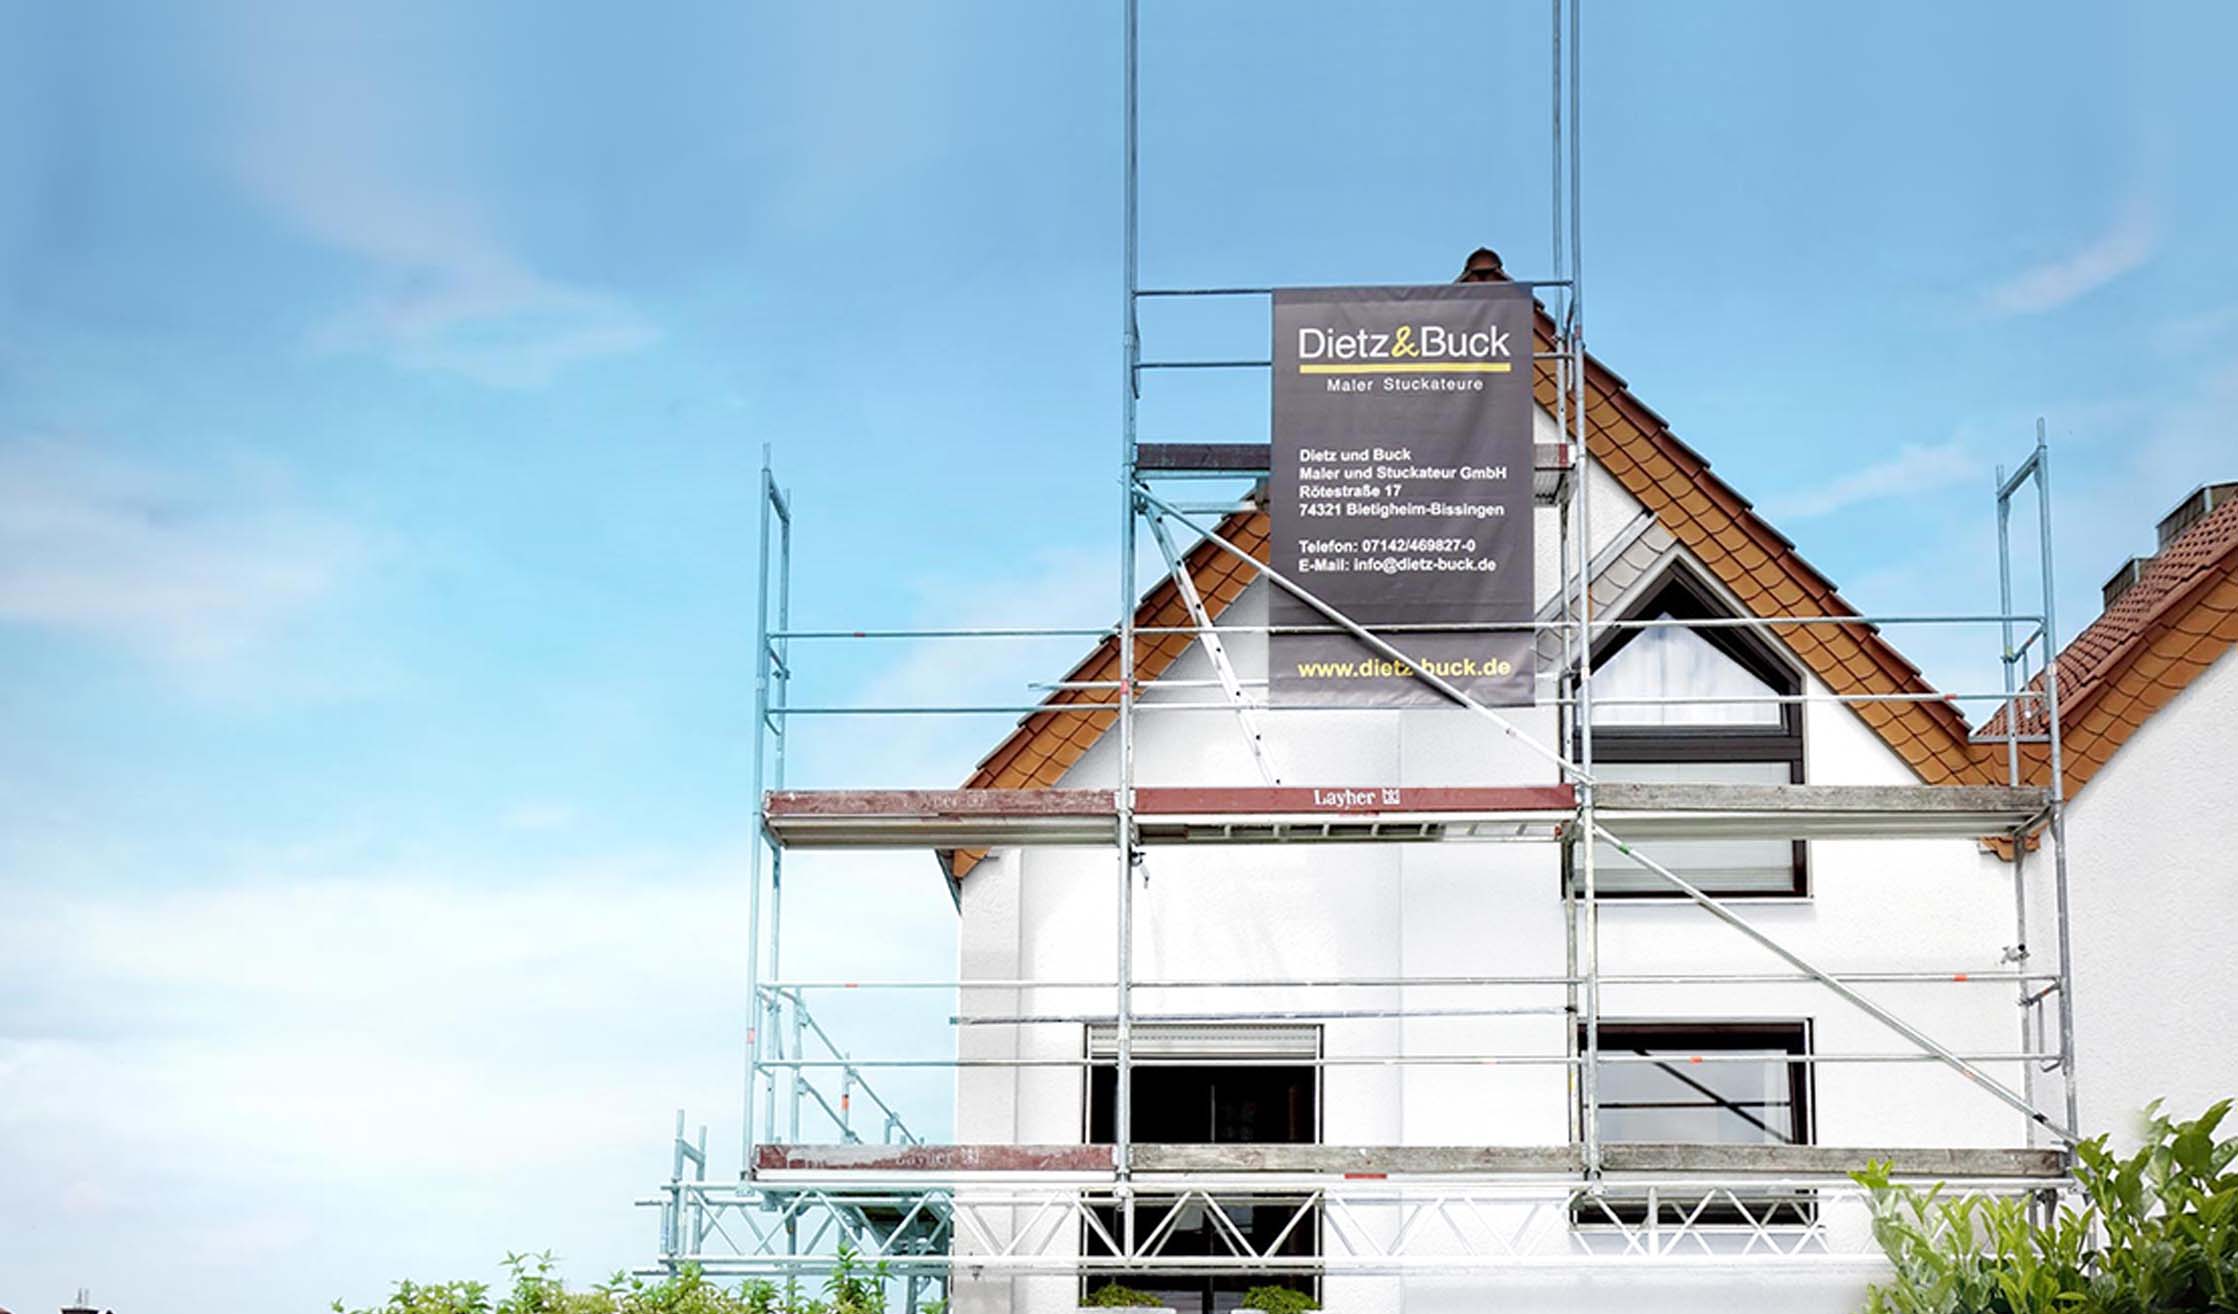 Bild vom Baugerüst mit einem Banner von Dietz und Buck vor einem weißen Haus für Fassadenrenovierung.